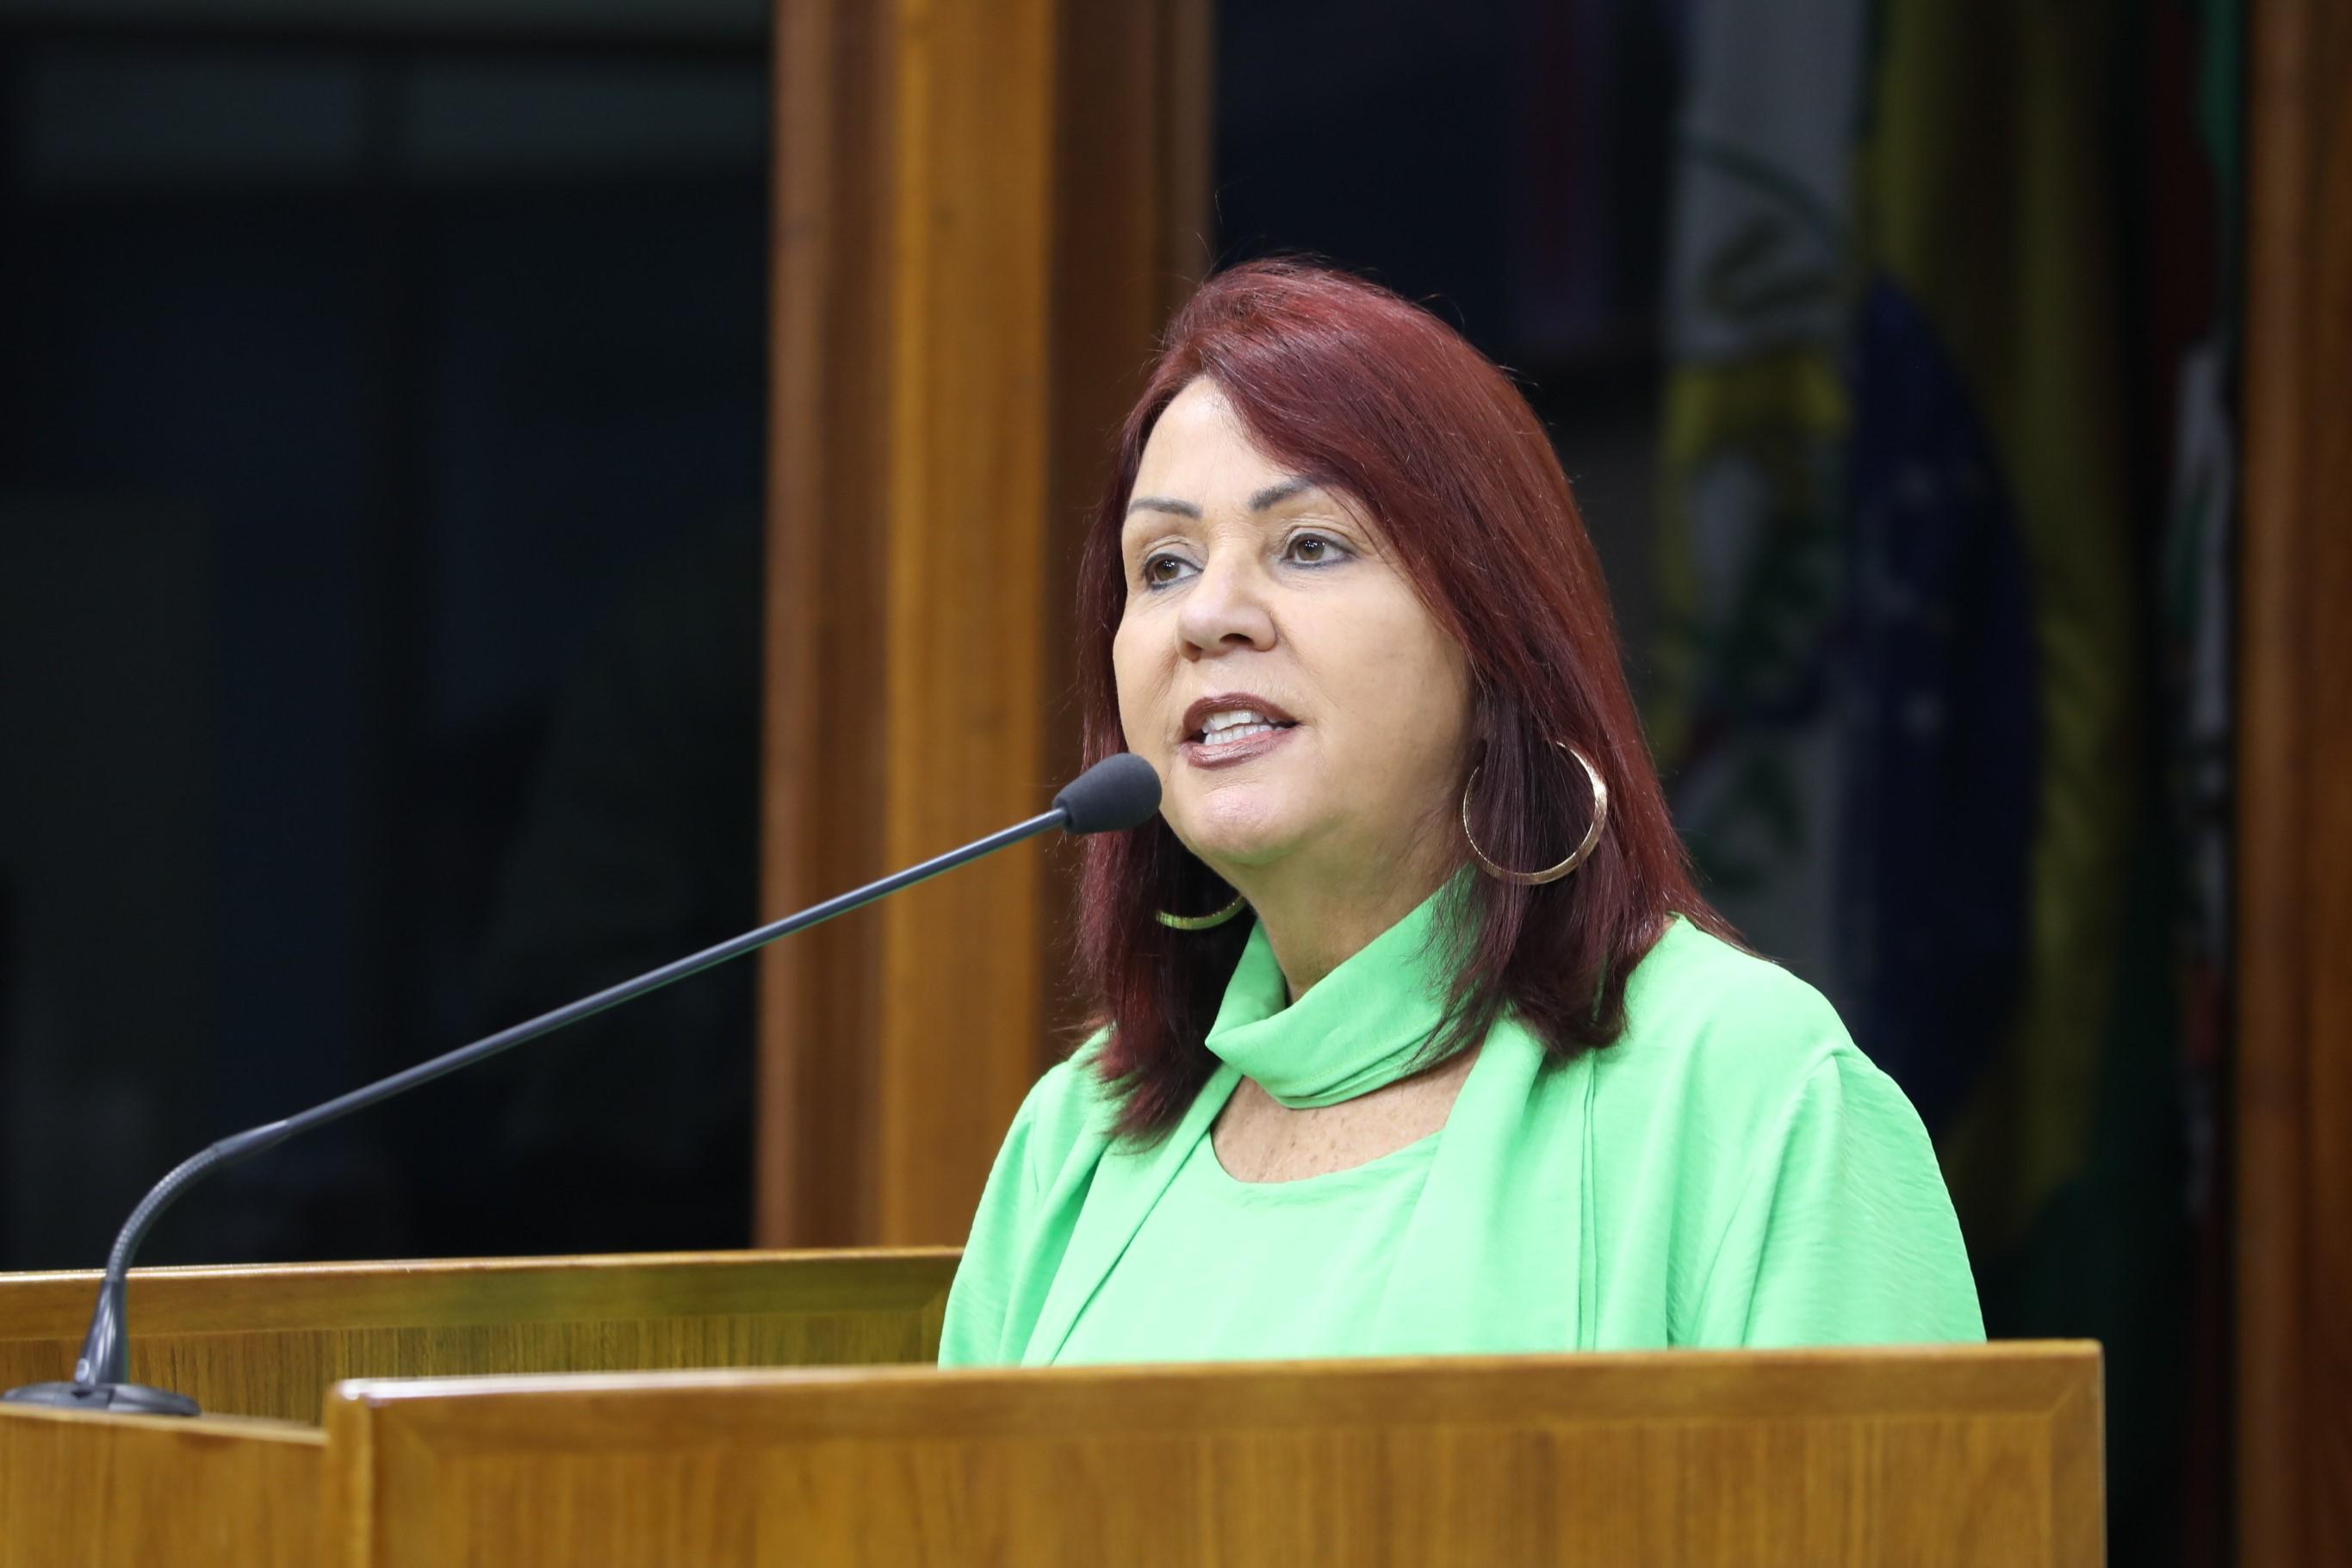 Rose Frigeri destaca a campanha “Mulheres unidas, cuidando uma das outras” da Câmara Municipal